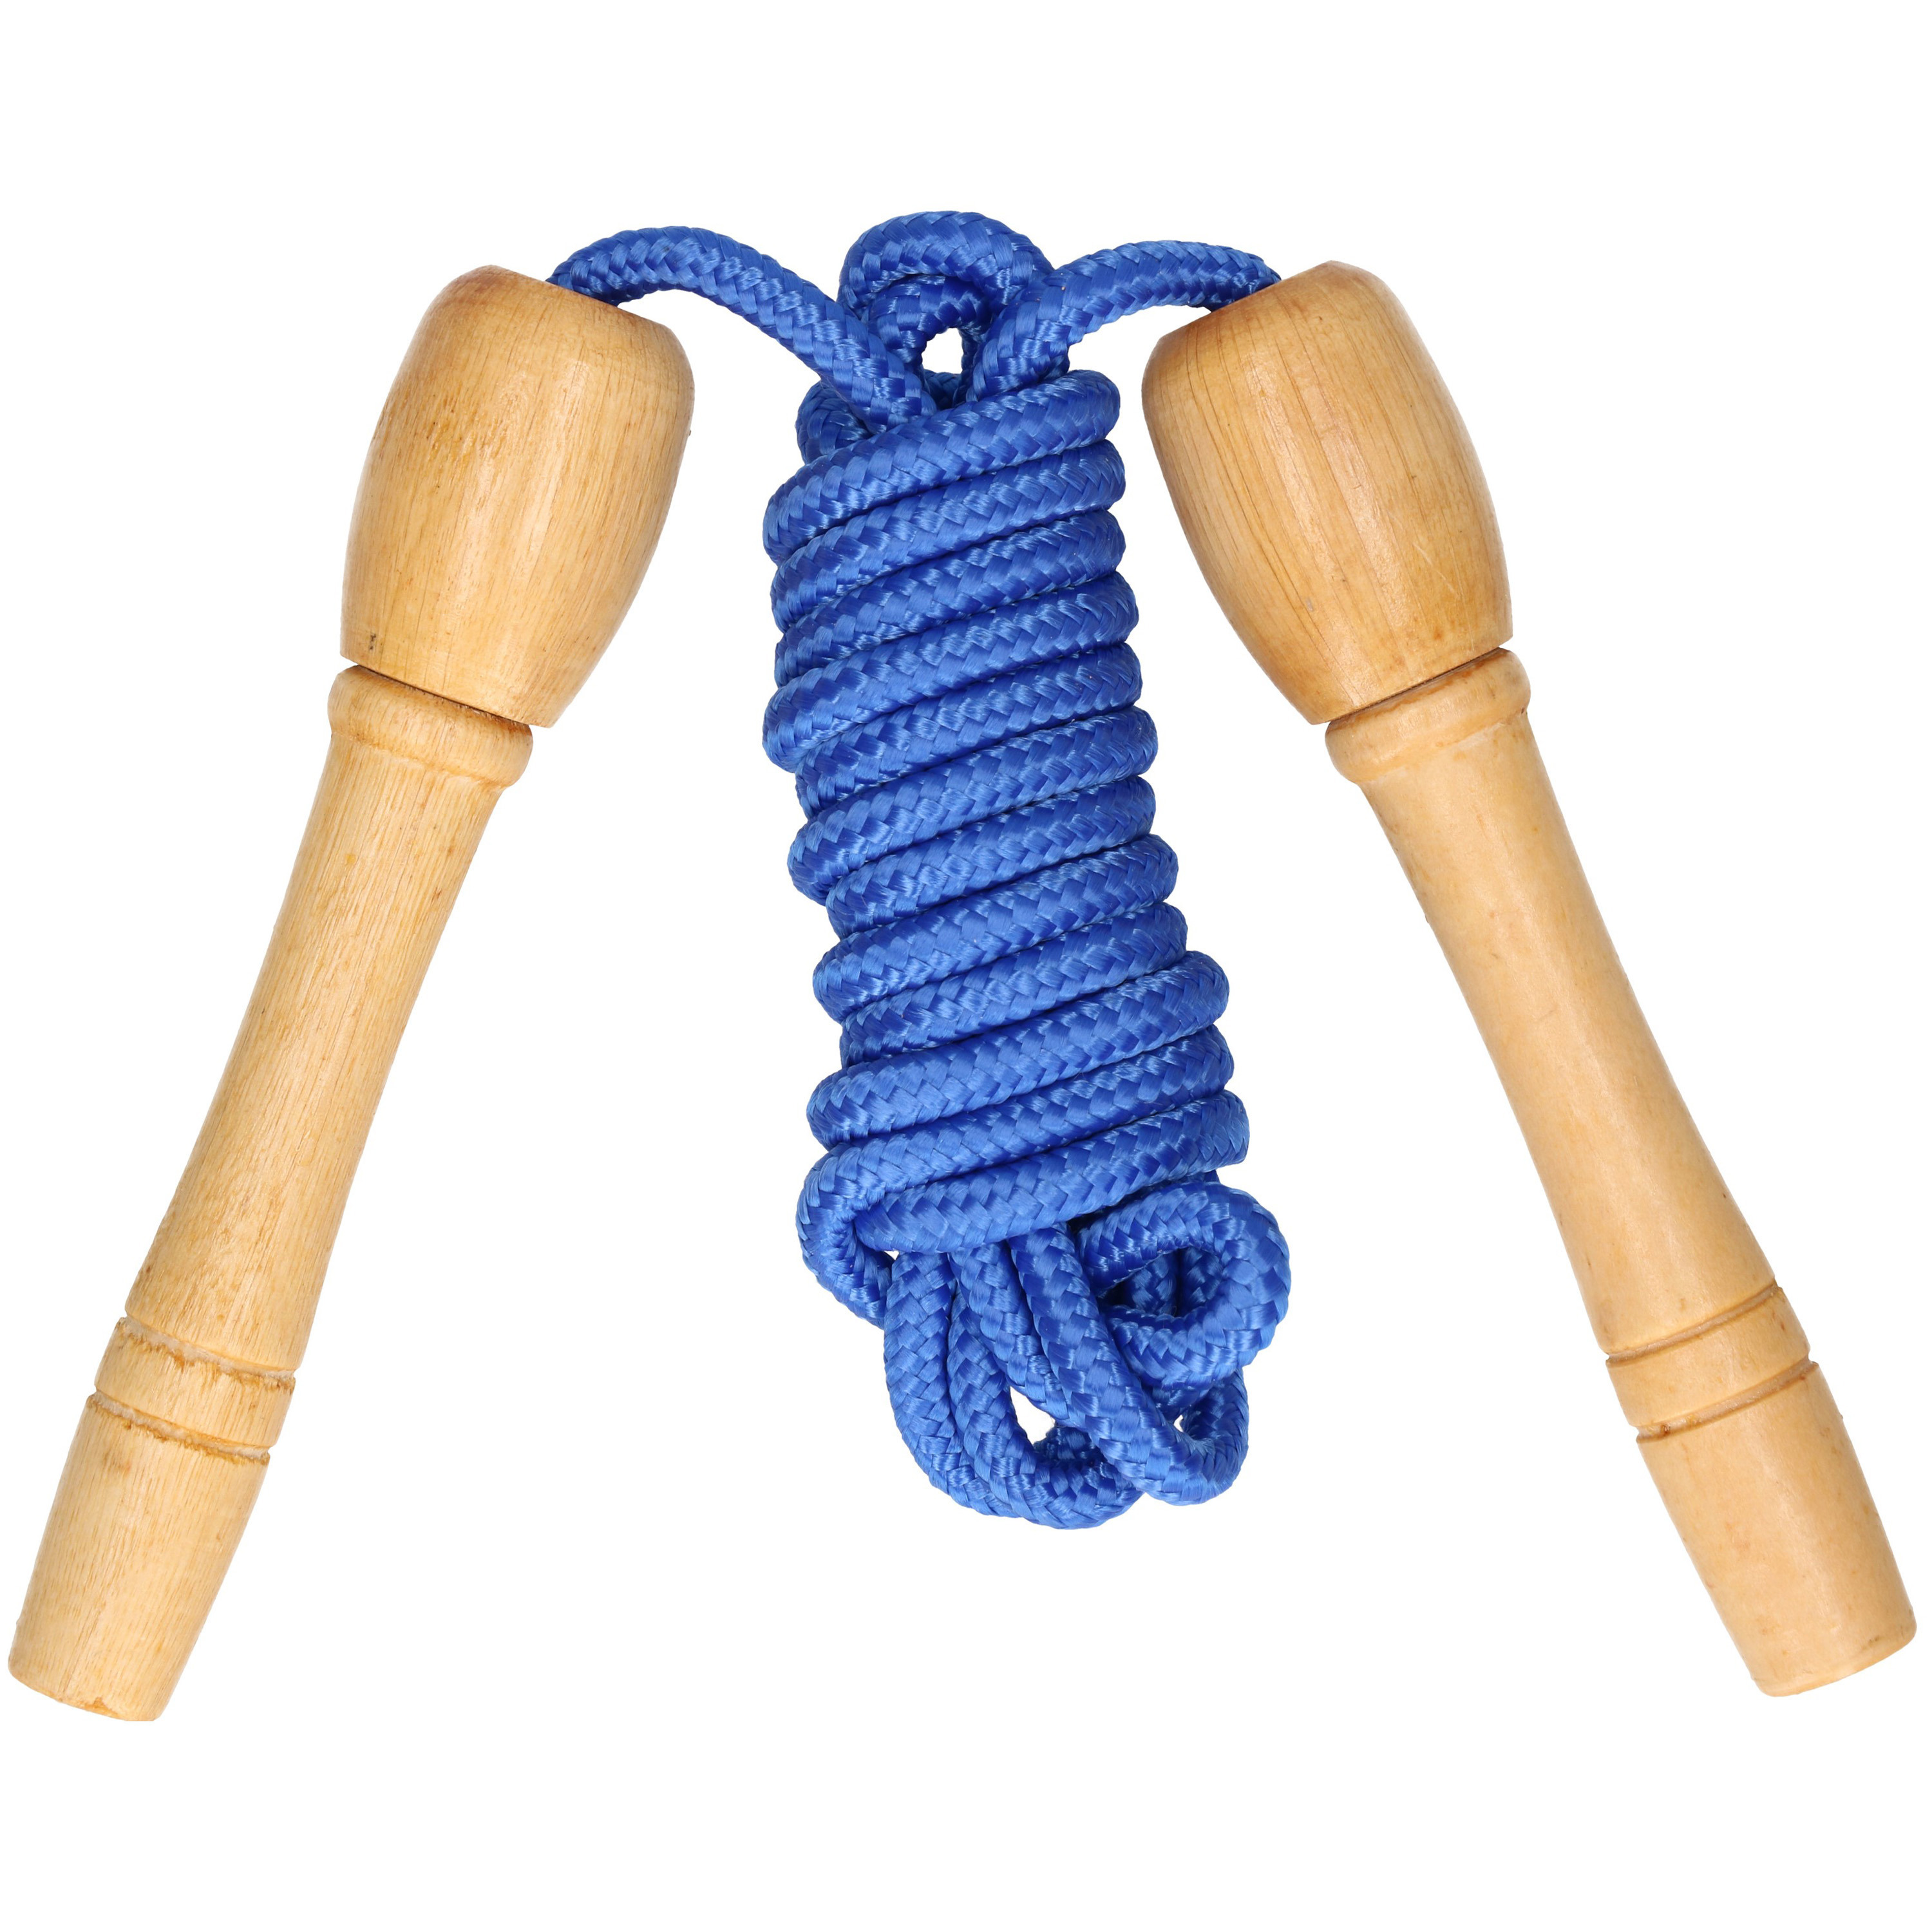 Kids Fun Springtouw speelgoed met houten handvat blauw 240 cmÃÂ buitenspeelgoed